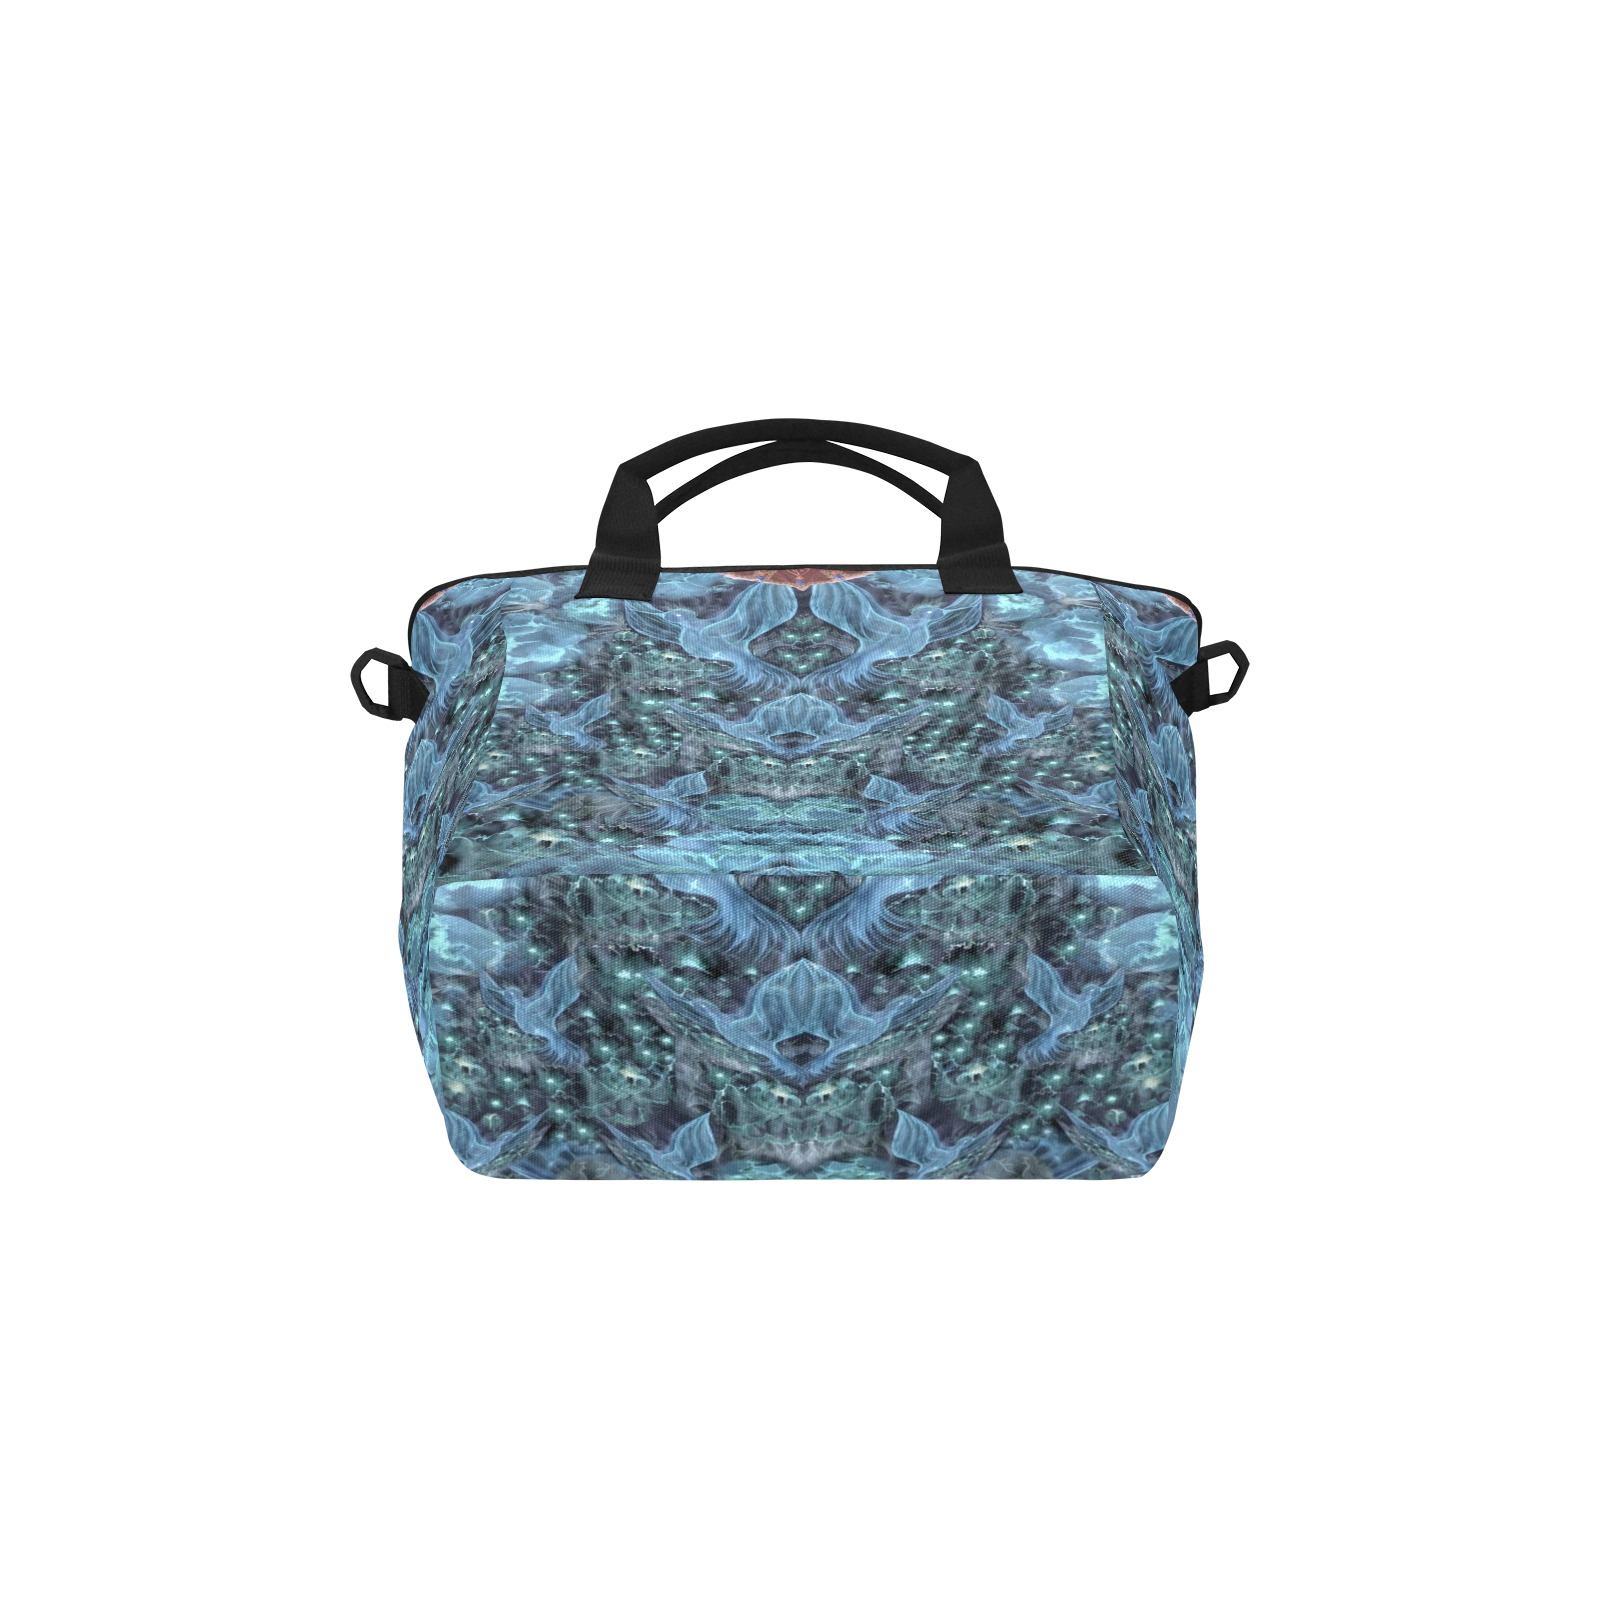 Nidhi Decembre 2014- pattern-5-2 neck back Tote Bag with Shoulder Strap (Model 1724)